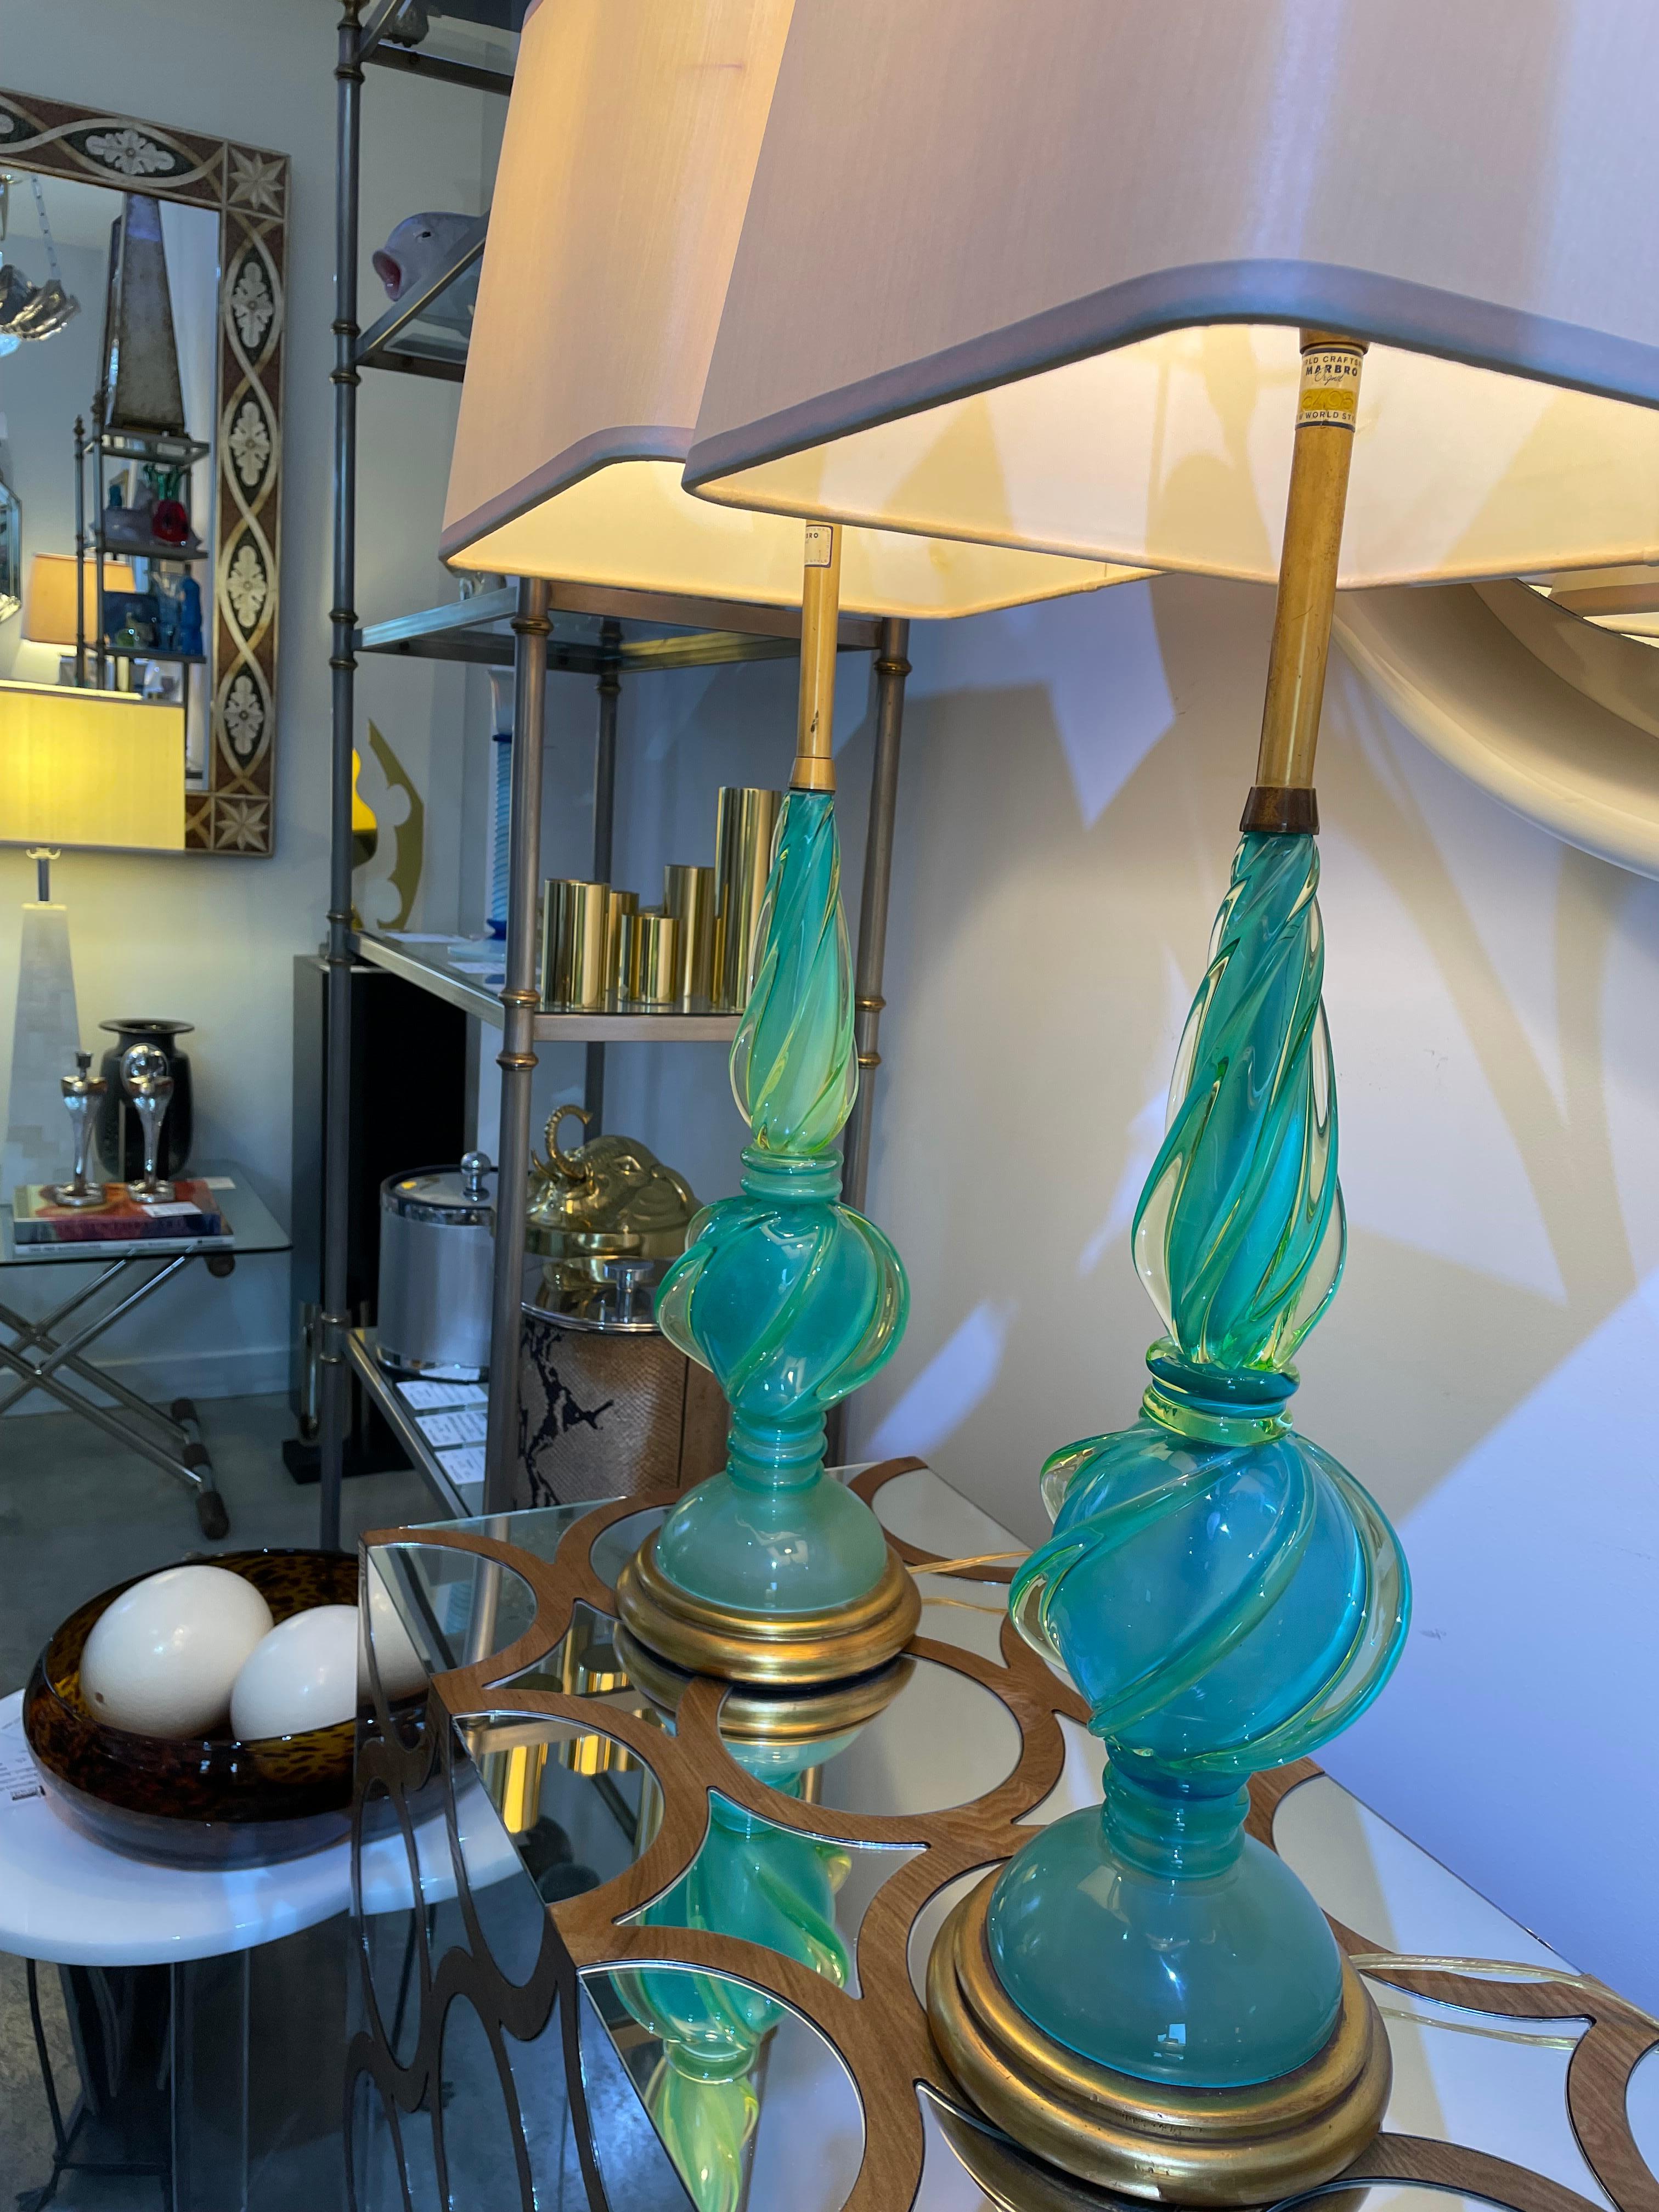 Dieses stilvolle und schicke Paar Muano Uranium-Glastischlampen wurde von Seguso für die Marbro Lamp Company entworfen und stammt aus den 1960er Jahren.

Hinweis: Die Lampenschirme sind nicht im Lieferumfang enthalten und dienen nur der